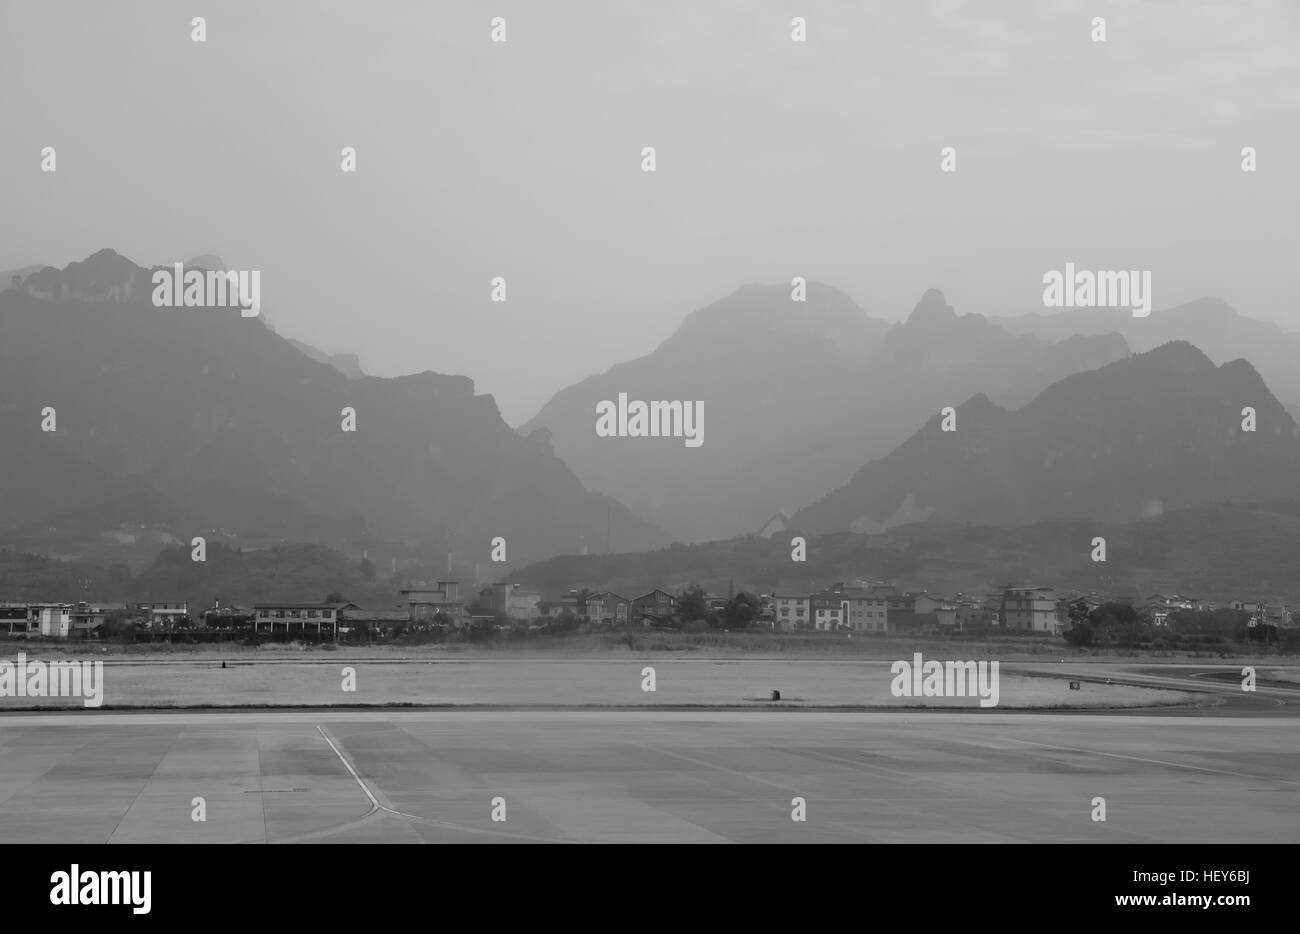 Una foto in bianco e nero delle montagne di tianmen o Tianmen shan salendo intorno alla pista di Zhangjiajie airport nella provincia del Hunan in Cina. Foto Stock